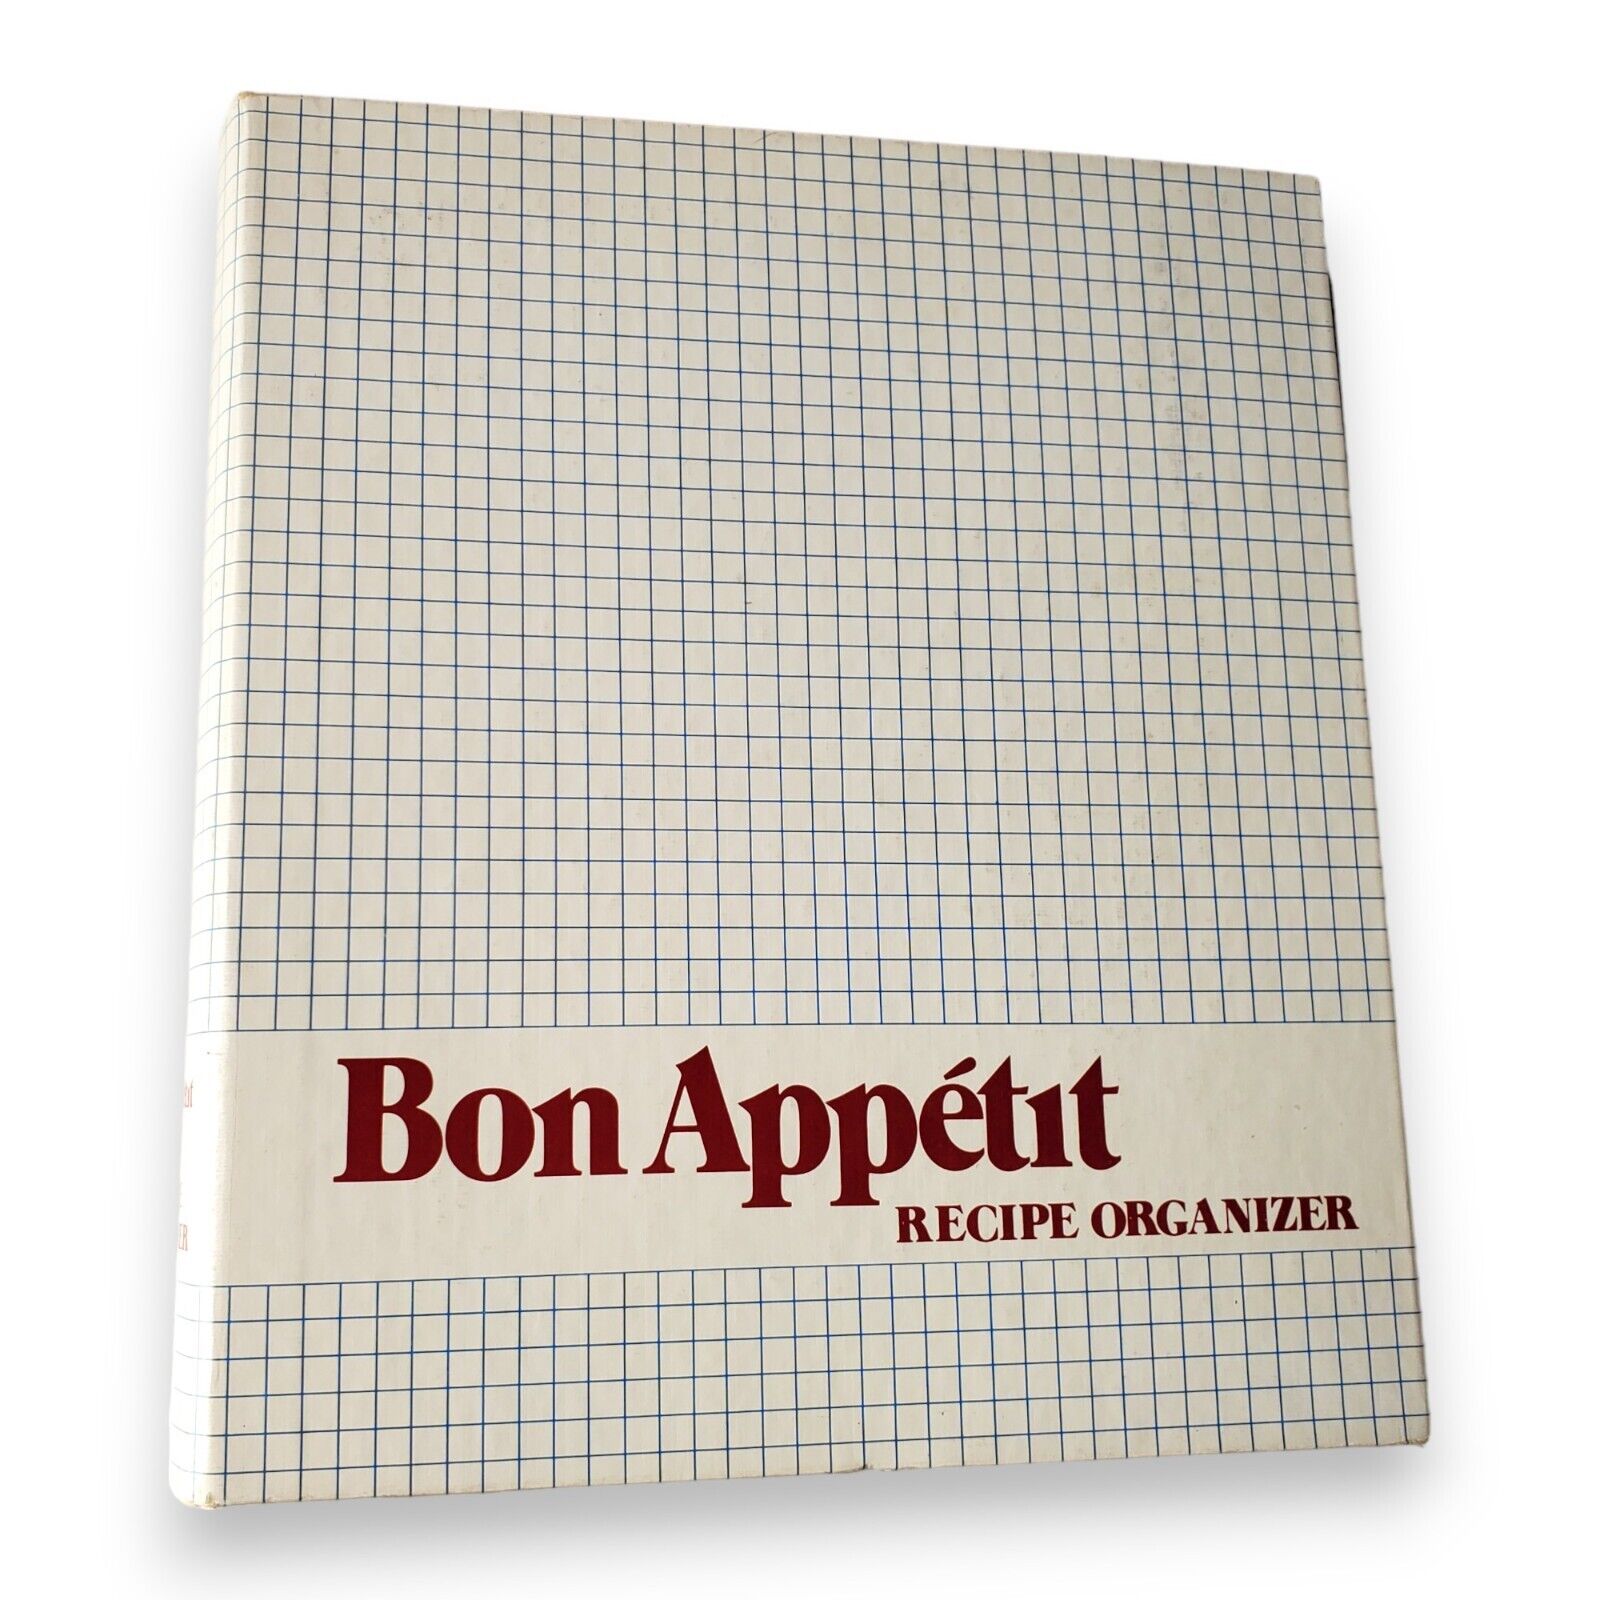 Bon Appétit 1980 Recipe Organizer - Vintage 6-Ring Binder, Retro Kitchen